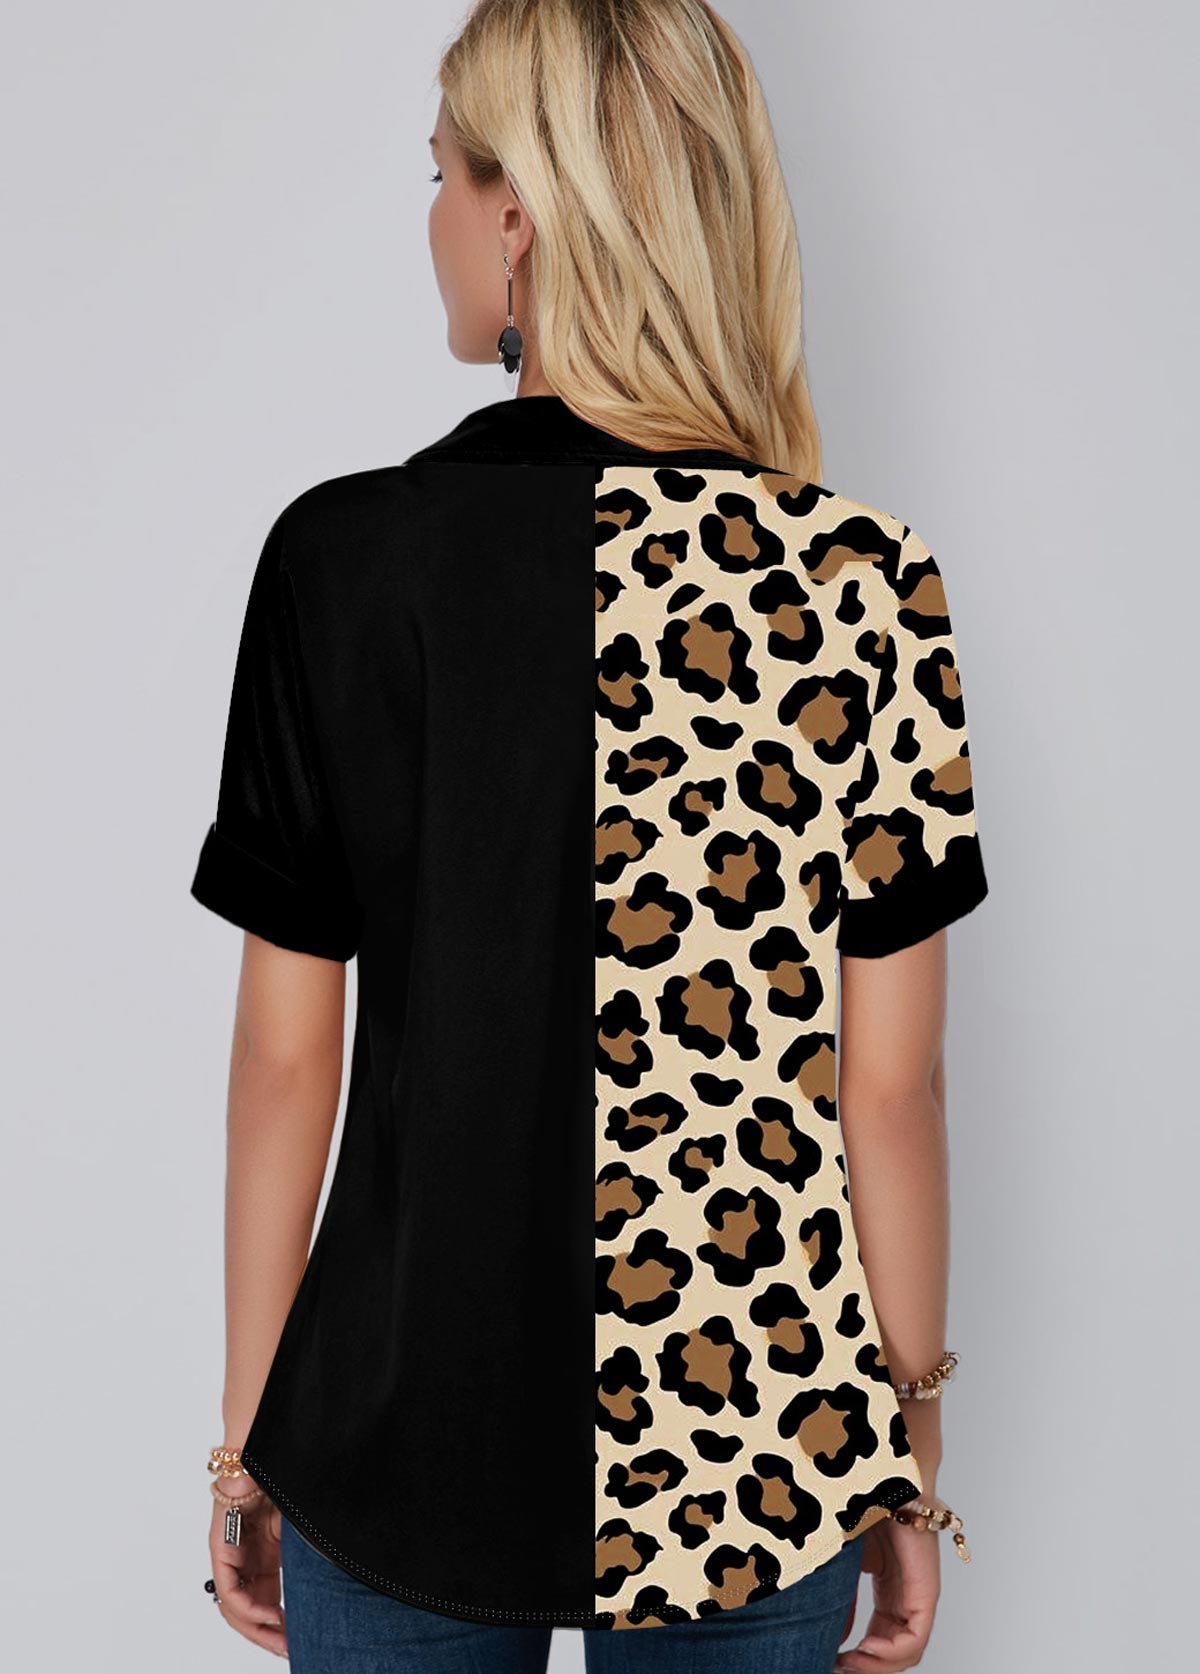 Chest Pocket Leopard Print Button Up Blouse